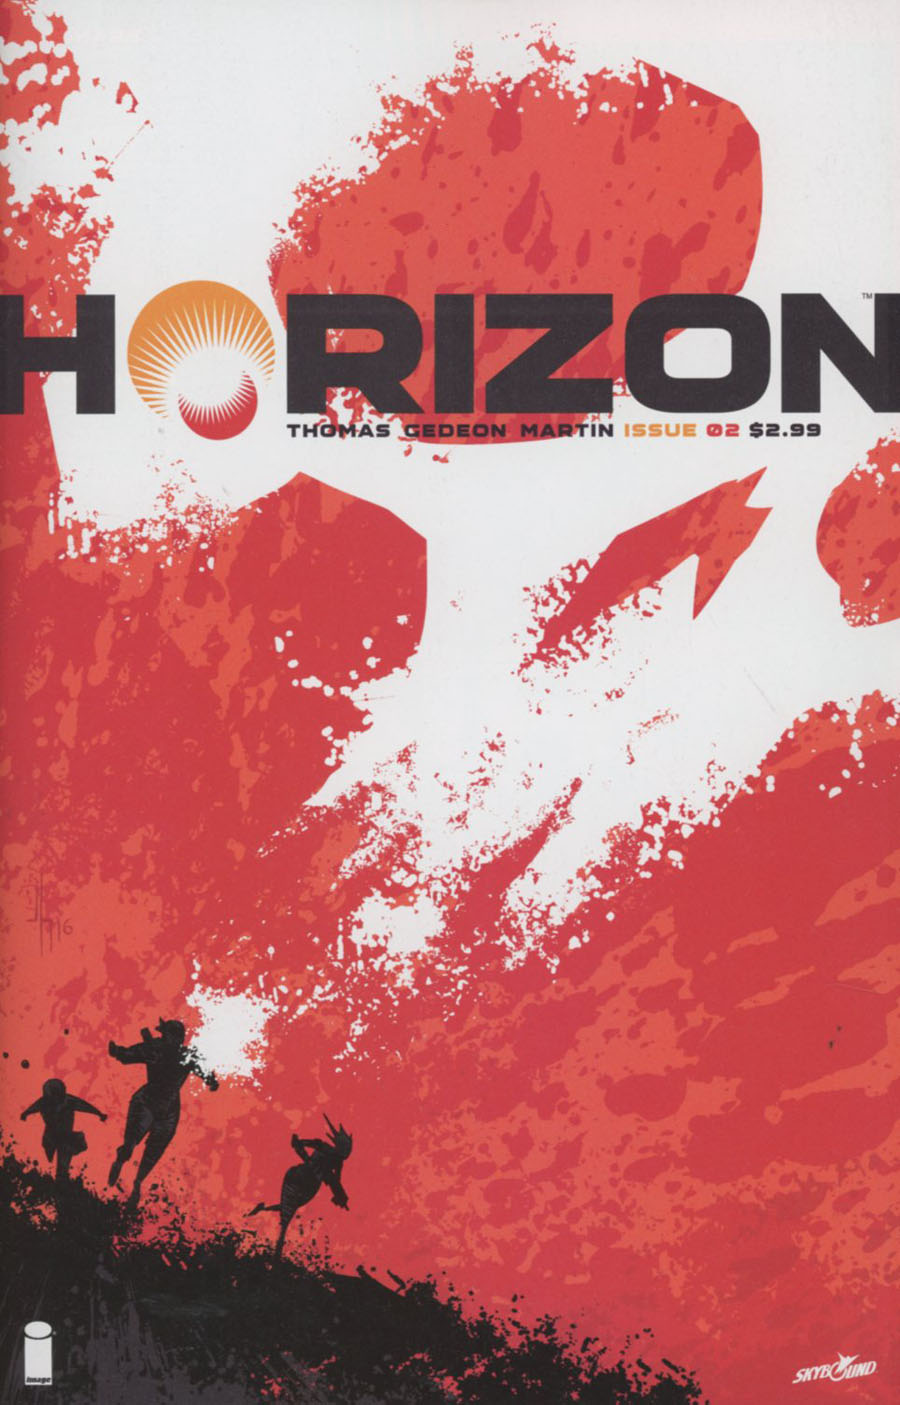 Horizon #2